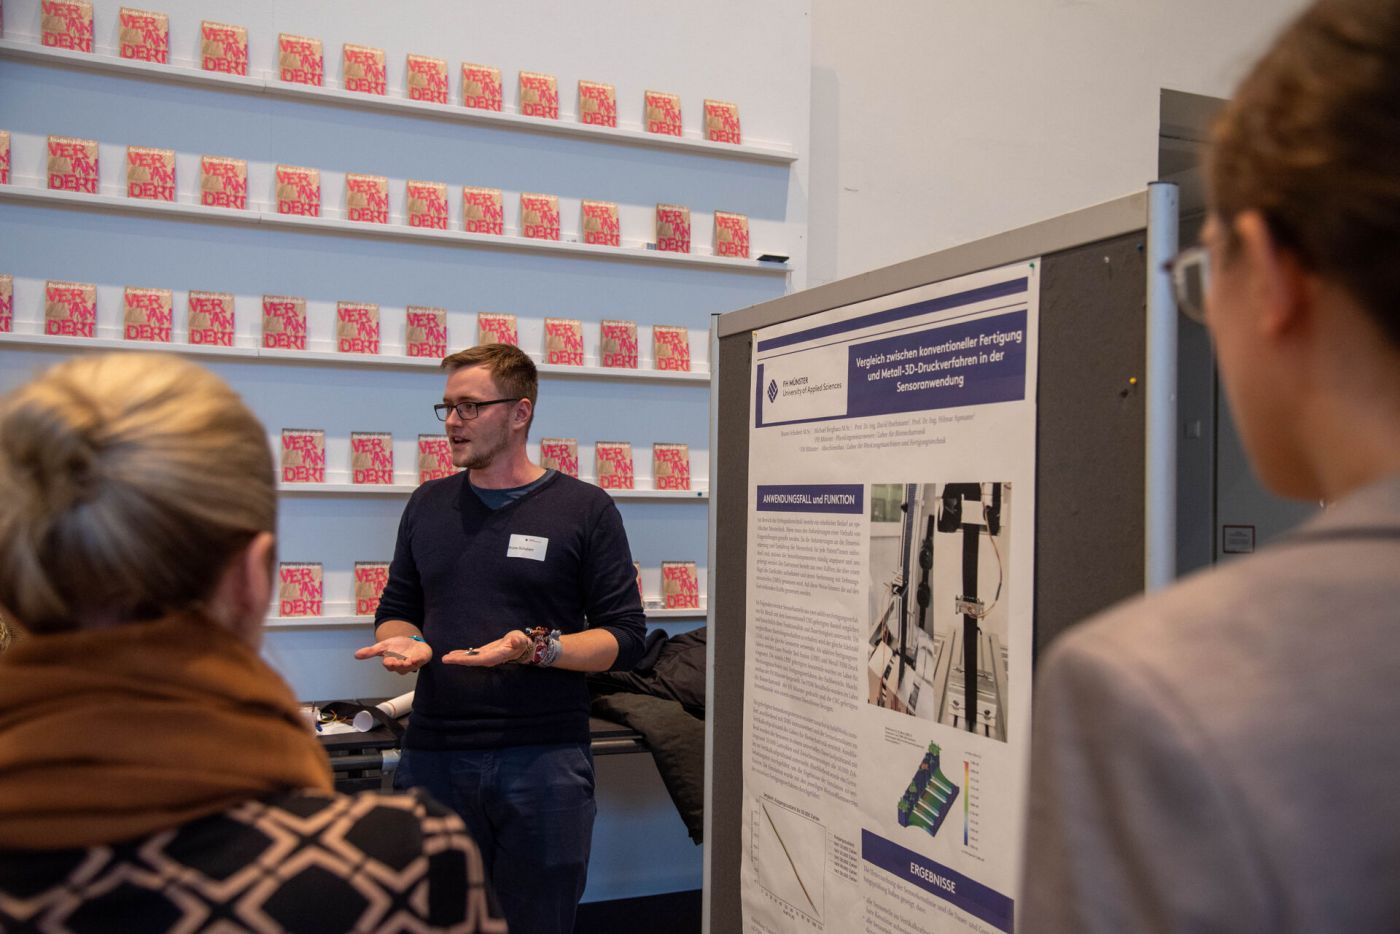 Personen hören einem Vortrag an einem Poster zu. (Foto: FH Münster/Michelle Liedtke)